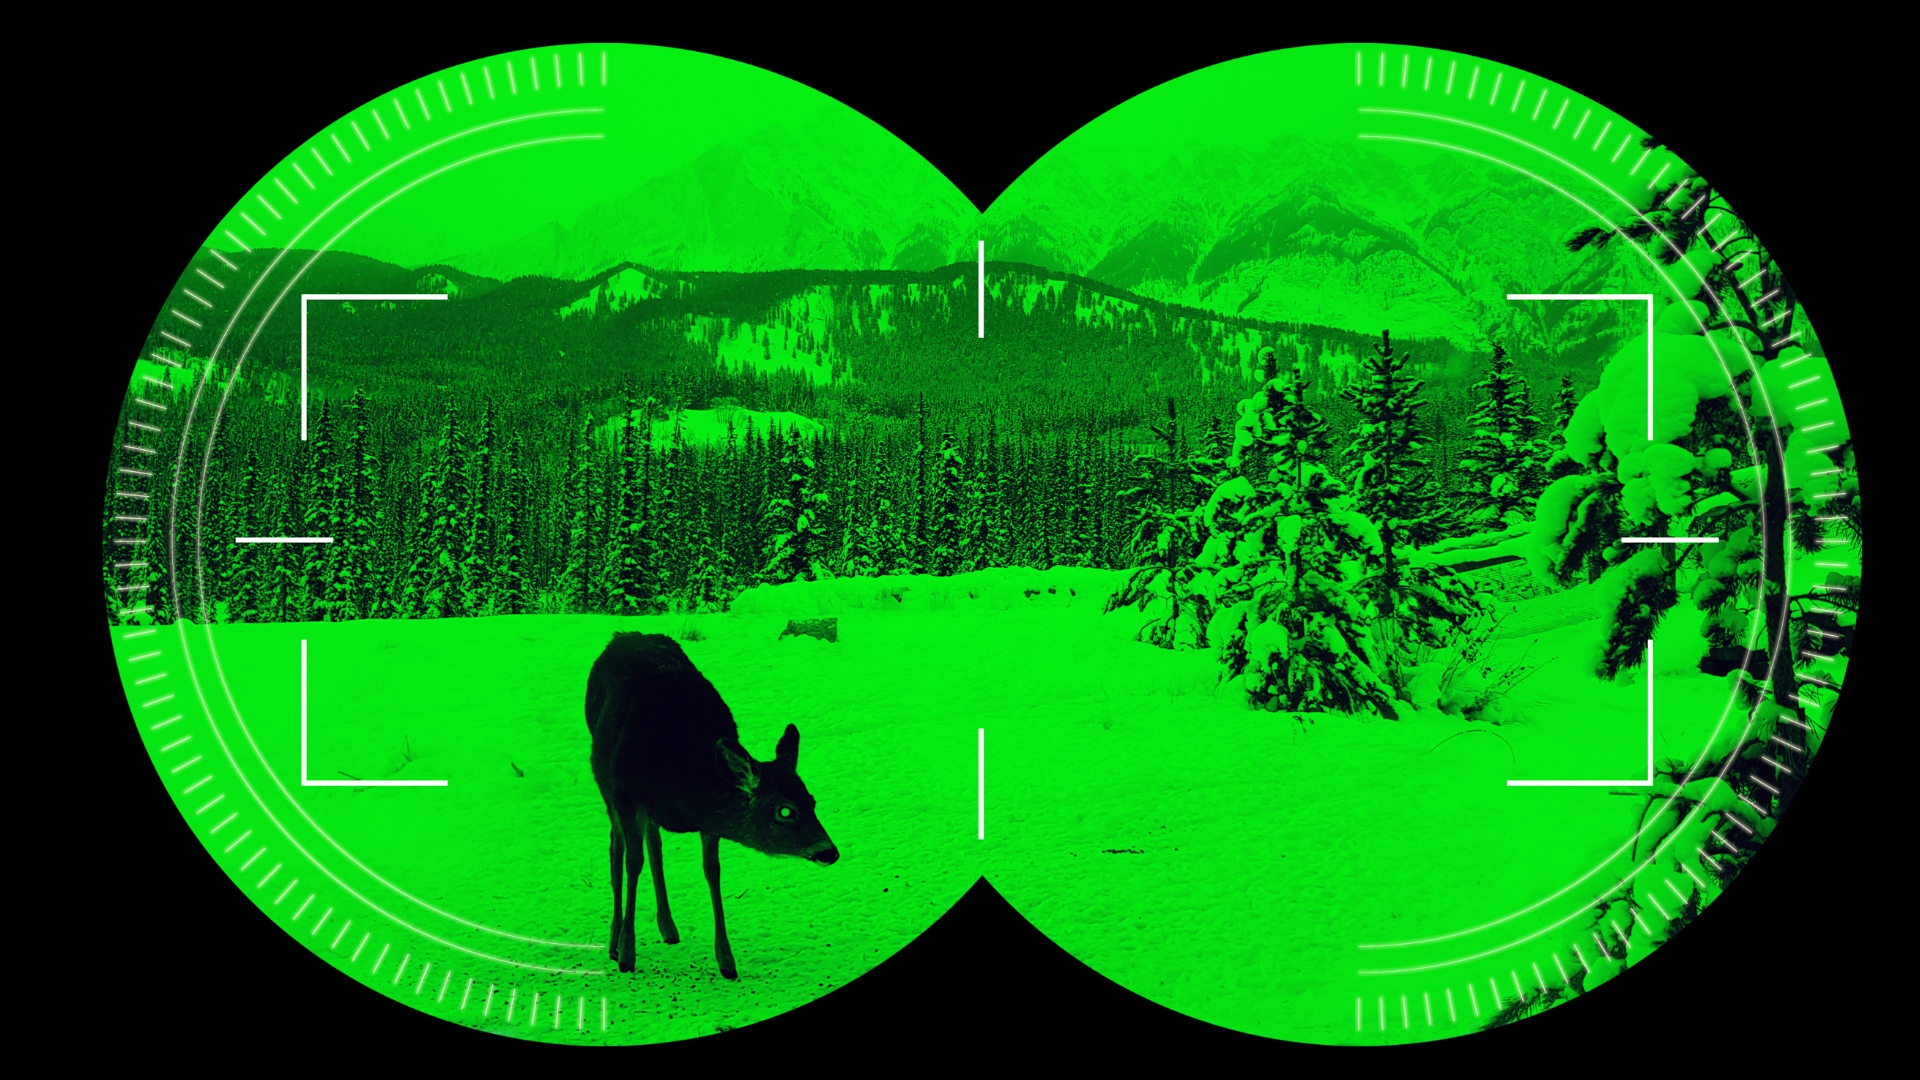 night vision thermal imaging binocular looking at deer on mountain